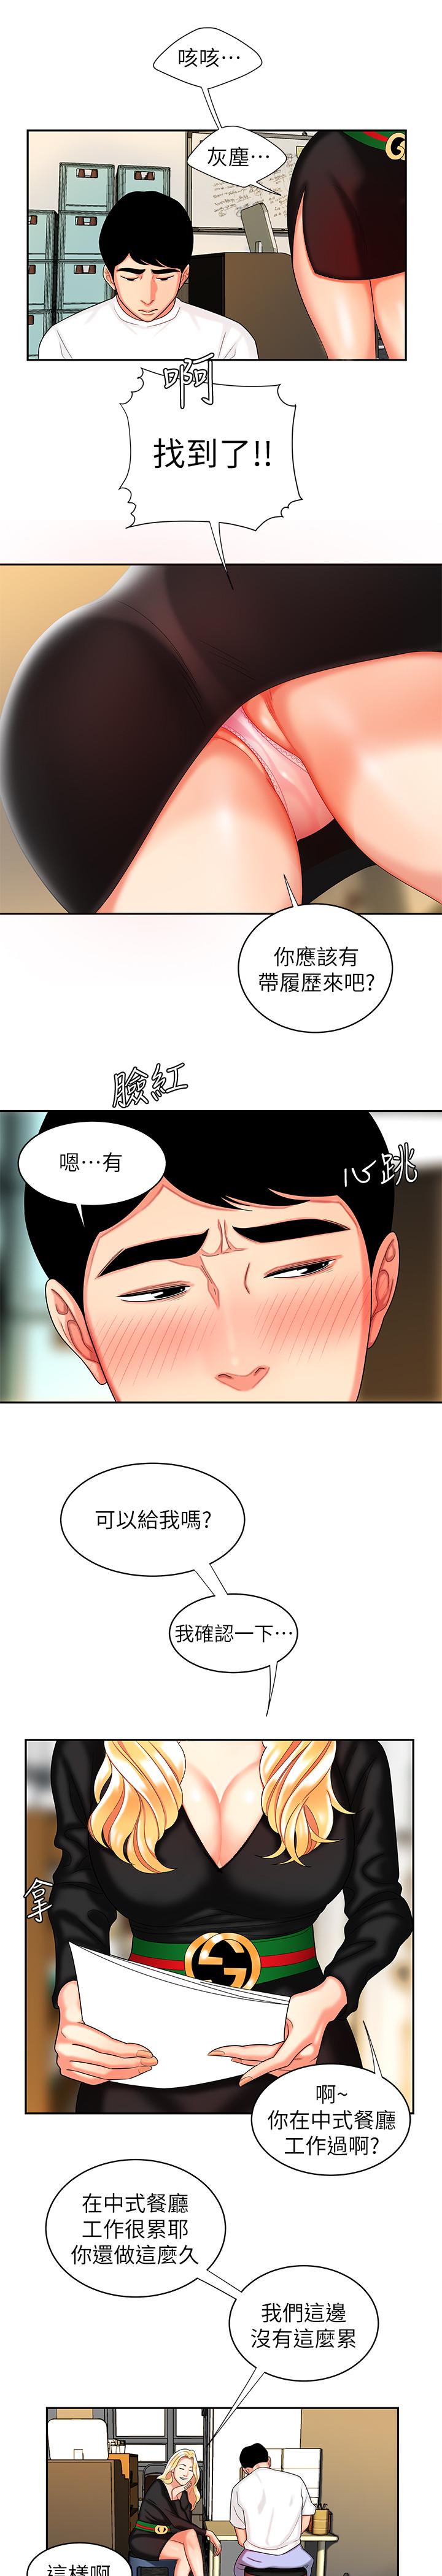 韩国污漫画 幸福外送員 第10话-在炸鸡店重新开始 24